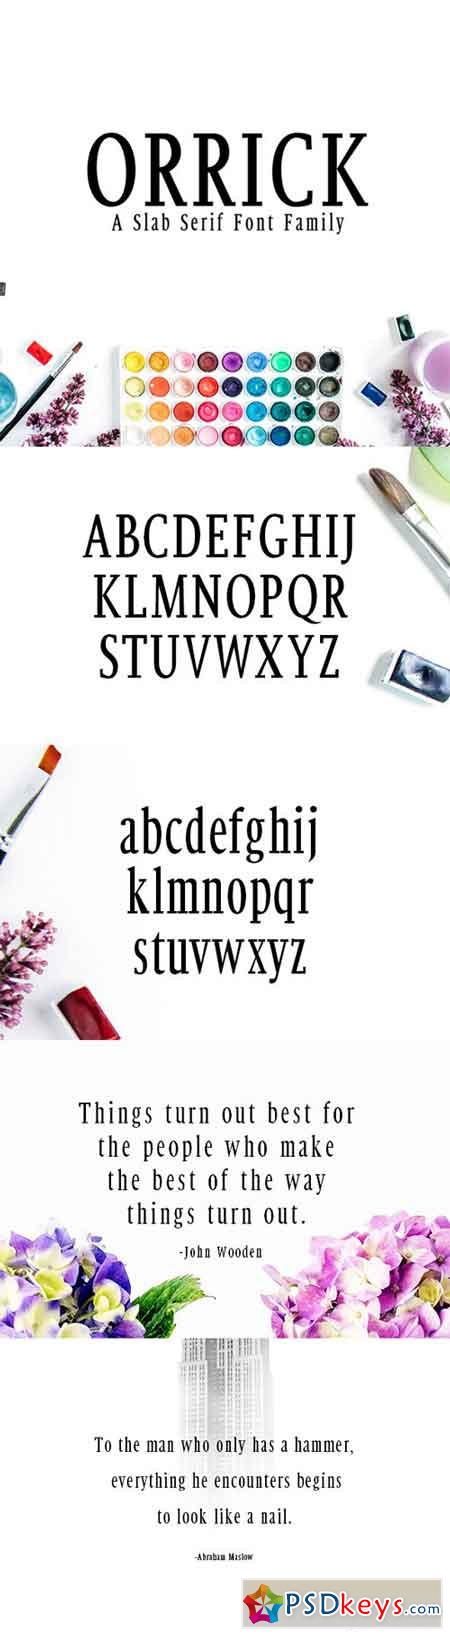 Orrick Slab Serif Font Family 20336031